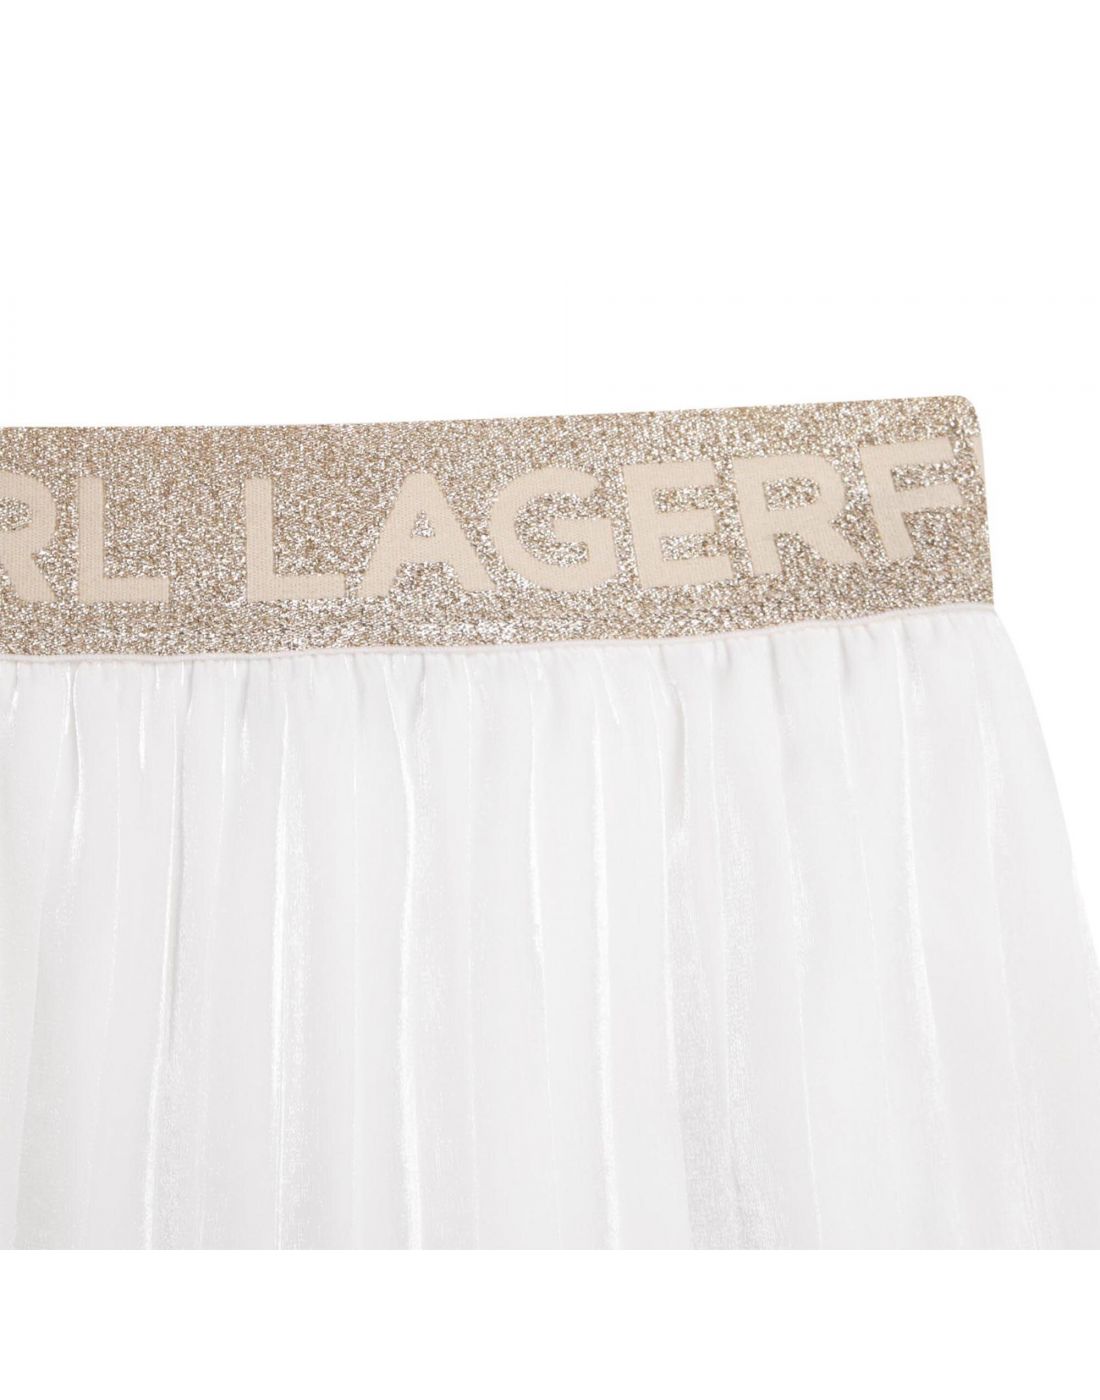 Karl Lagerfeld Girls Skirt